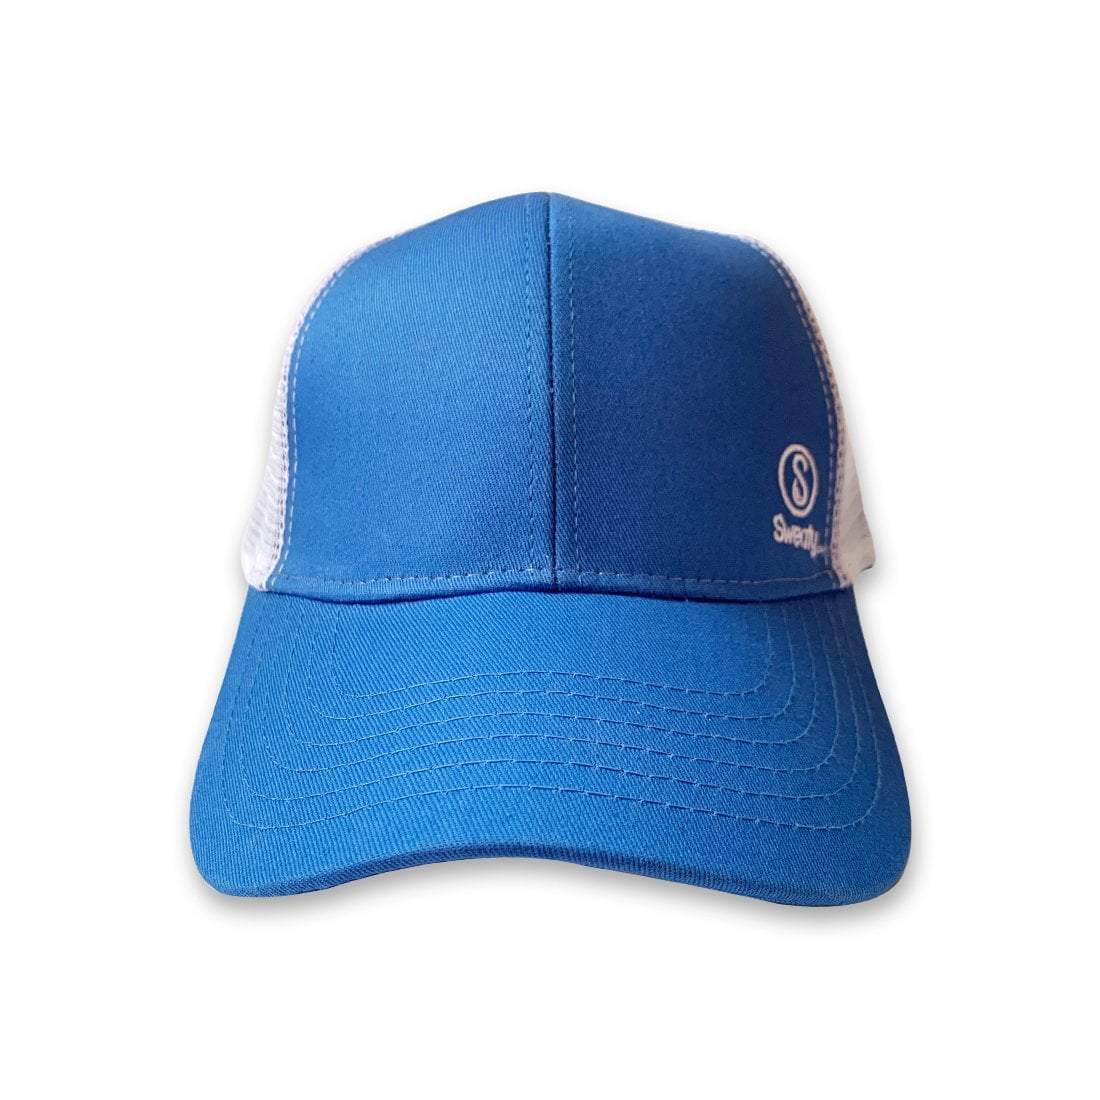 https://www.sweatybands.com/cdn/shop/products/hats-sweaty-baseball-hat-light-blue-sweaty-bands-28582324666448_1800x.jpg?v=1628073424